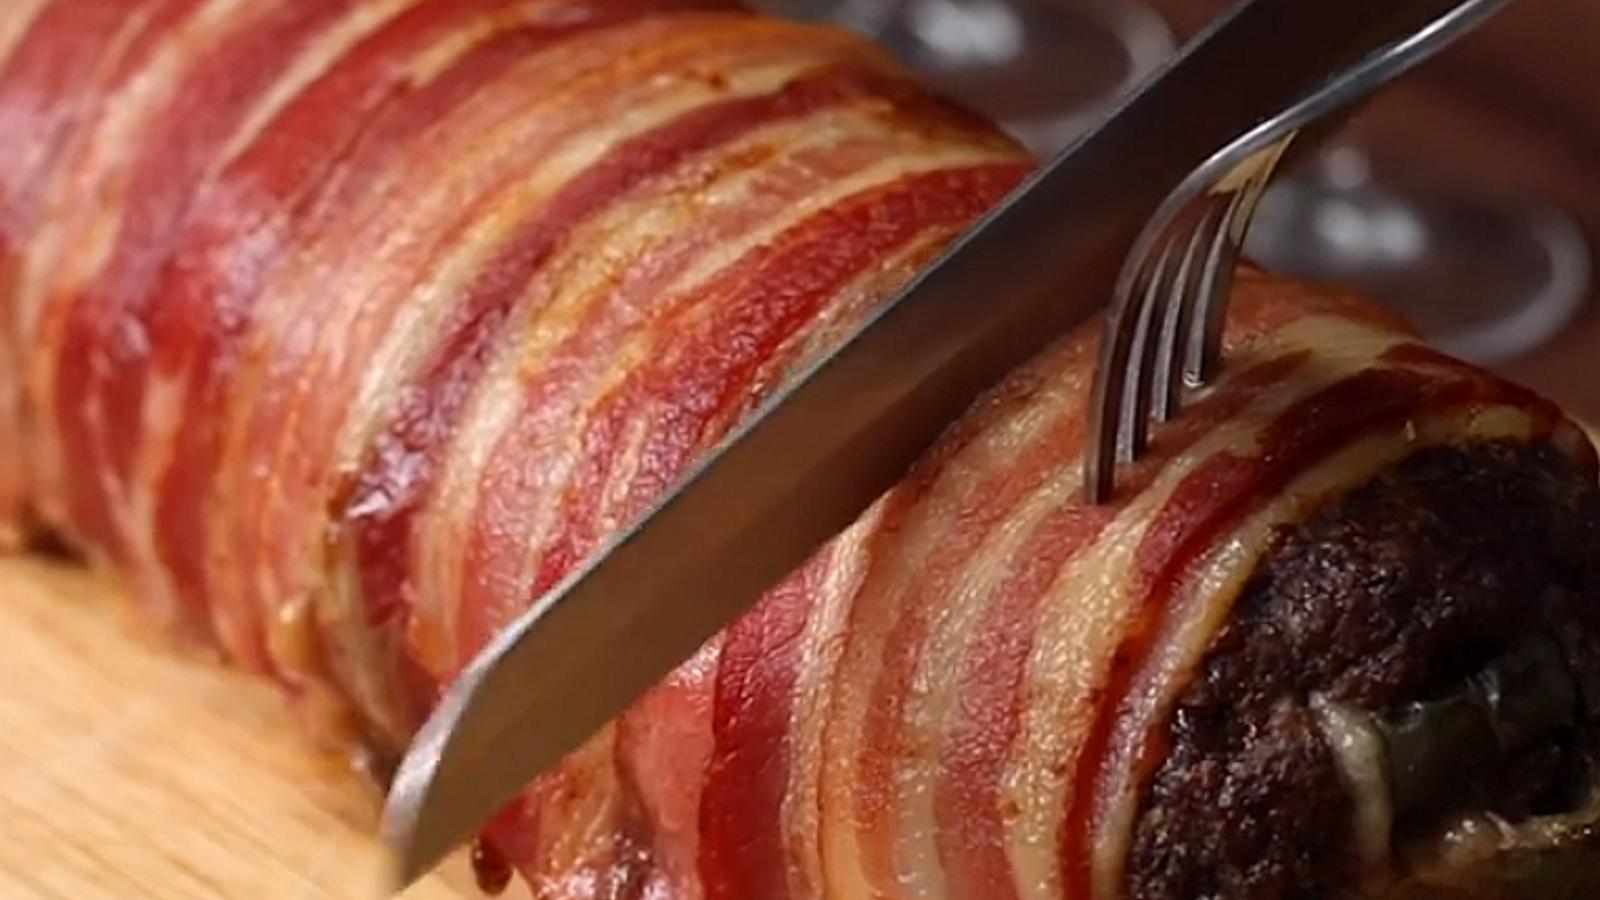 Apprêtez votre pain de viande comme un chef en l'enroulant de bacon croustillant